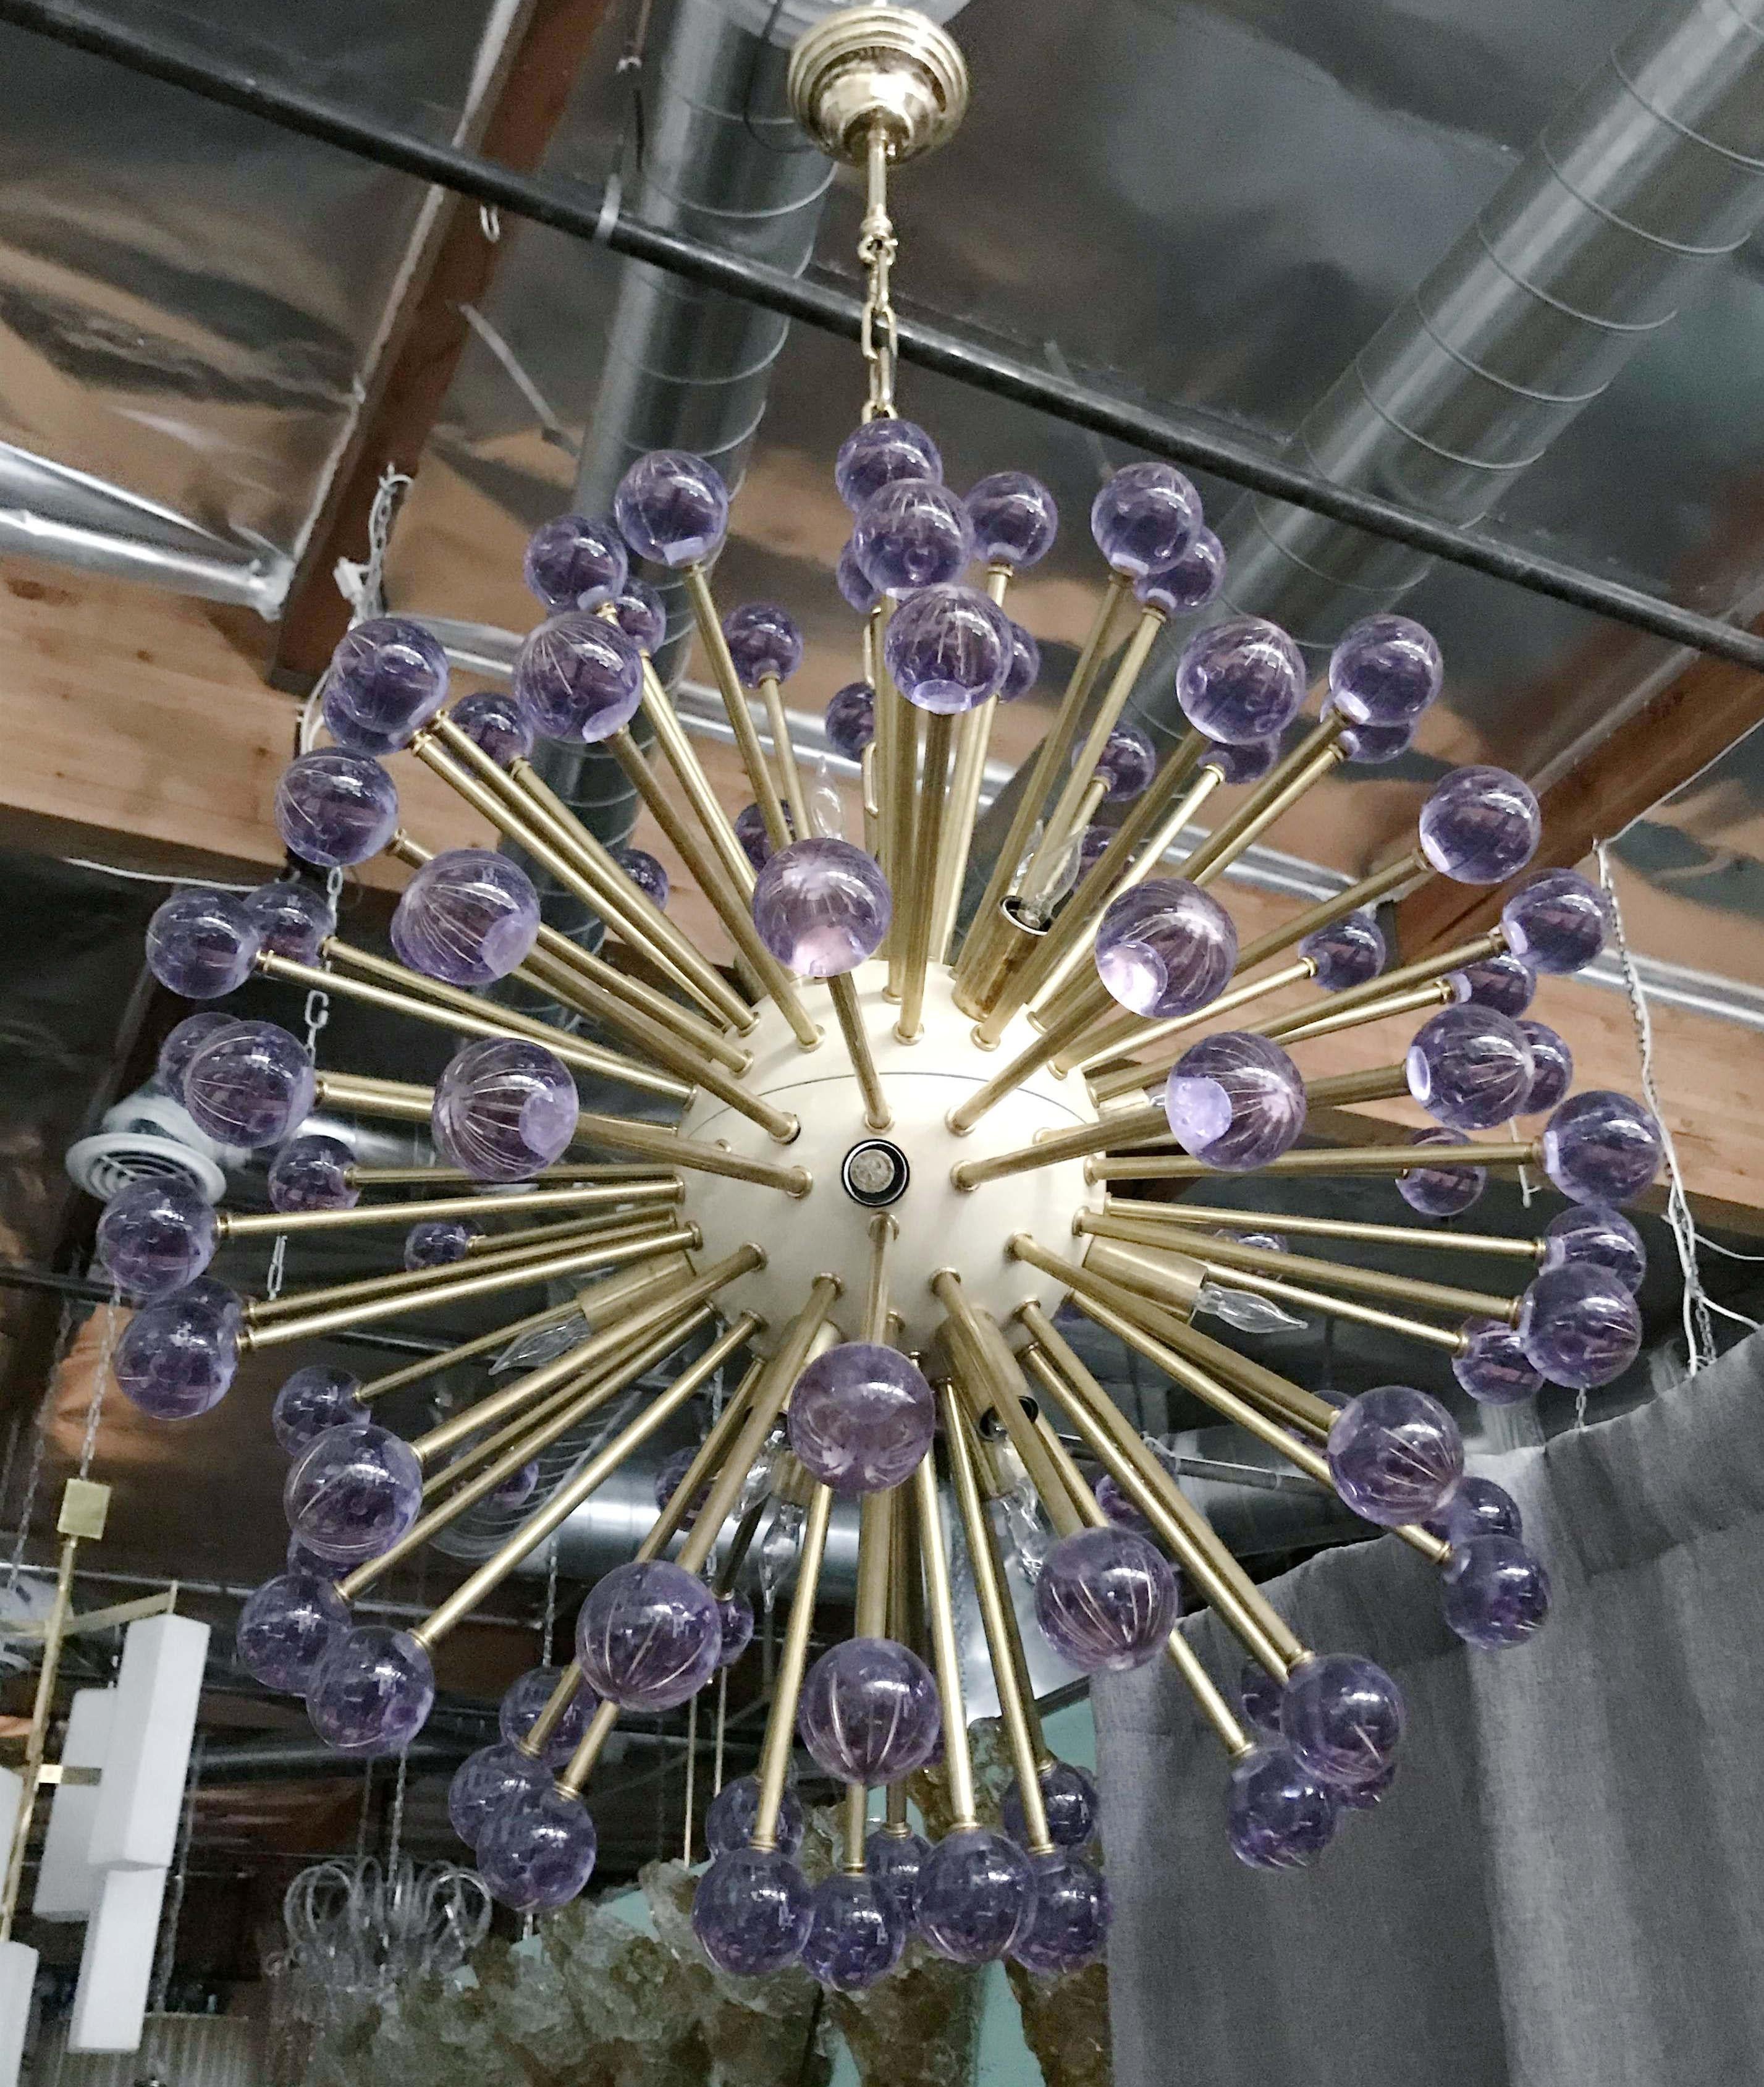 Moderner italienischer Sputnik-Kronleuchter mit violetten Murano-Glaskugeln, cremefarben emailliertem Zentrum, montiert auf Messingrahmen / Entwurf Fabio Bergomi für FABIO LTD / Hergestellt in Italien
16 Leuchten / Typ E12 oder E14 / max. 40W pro